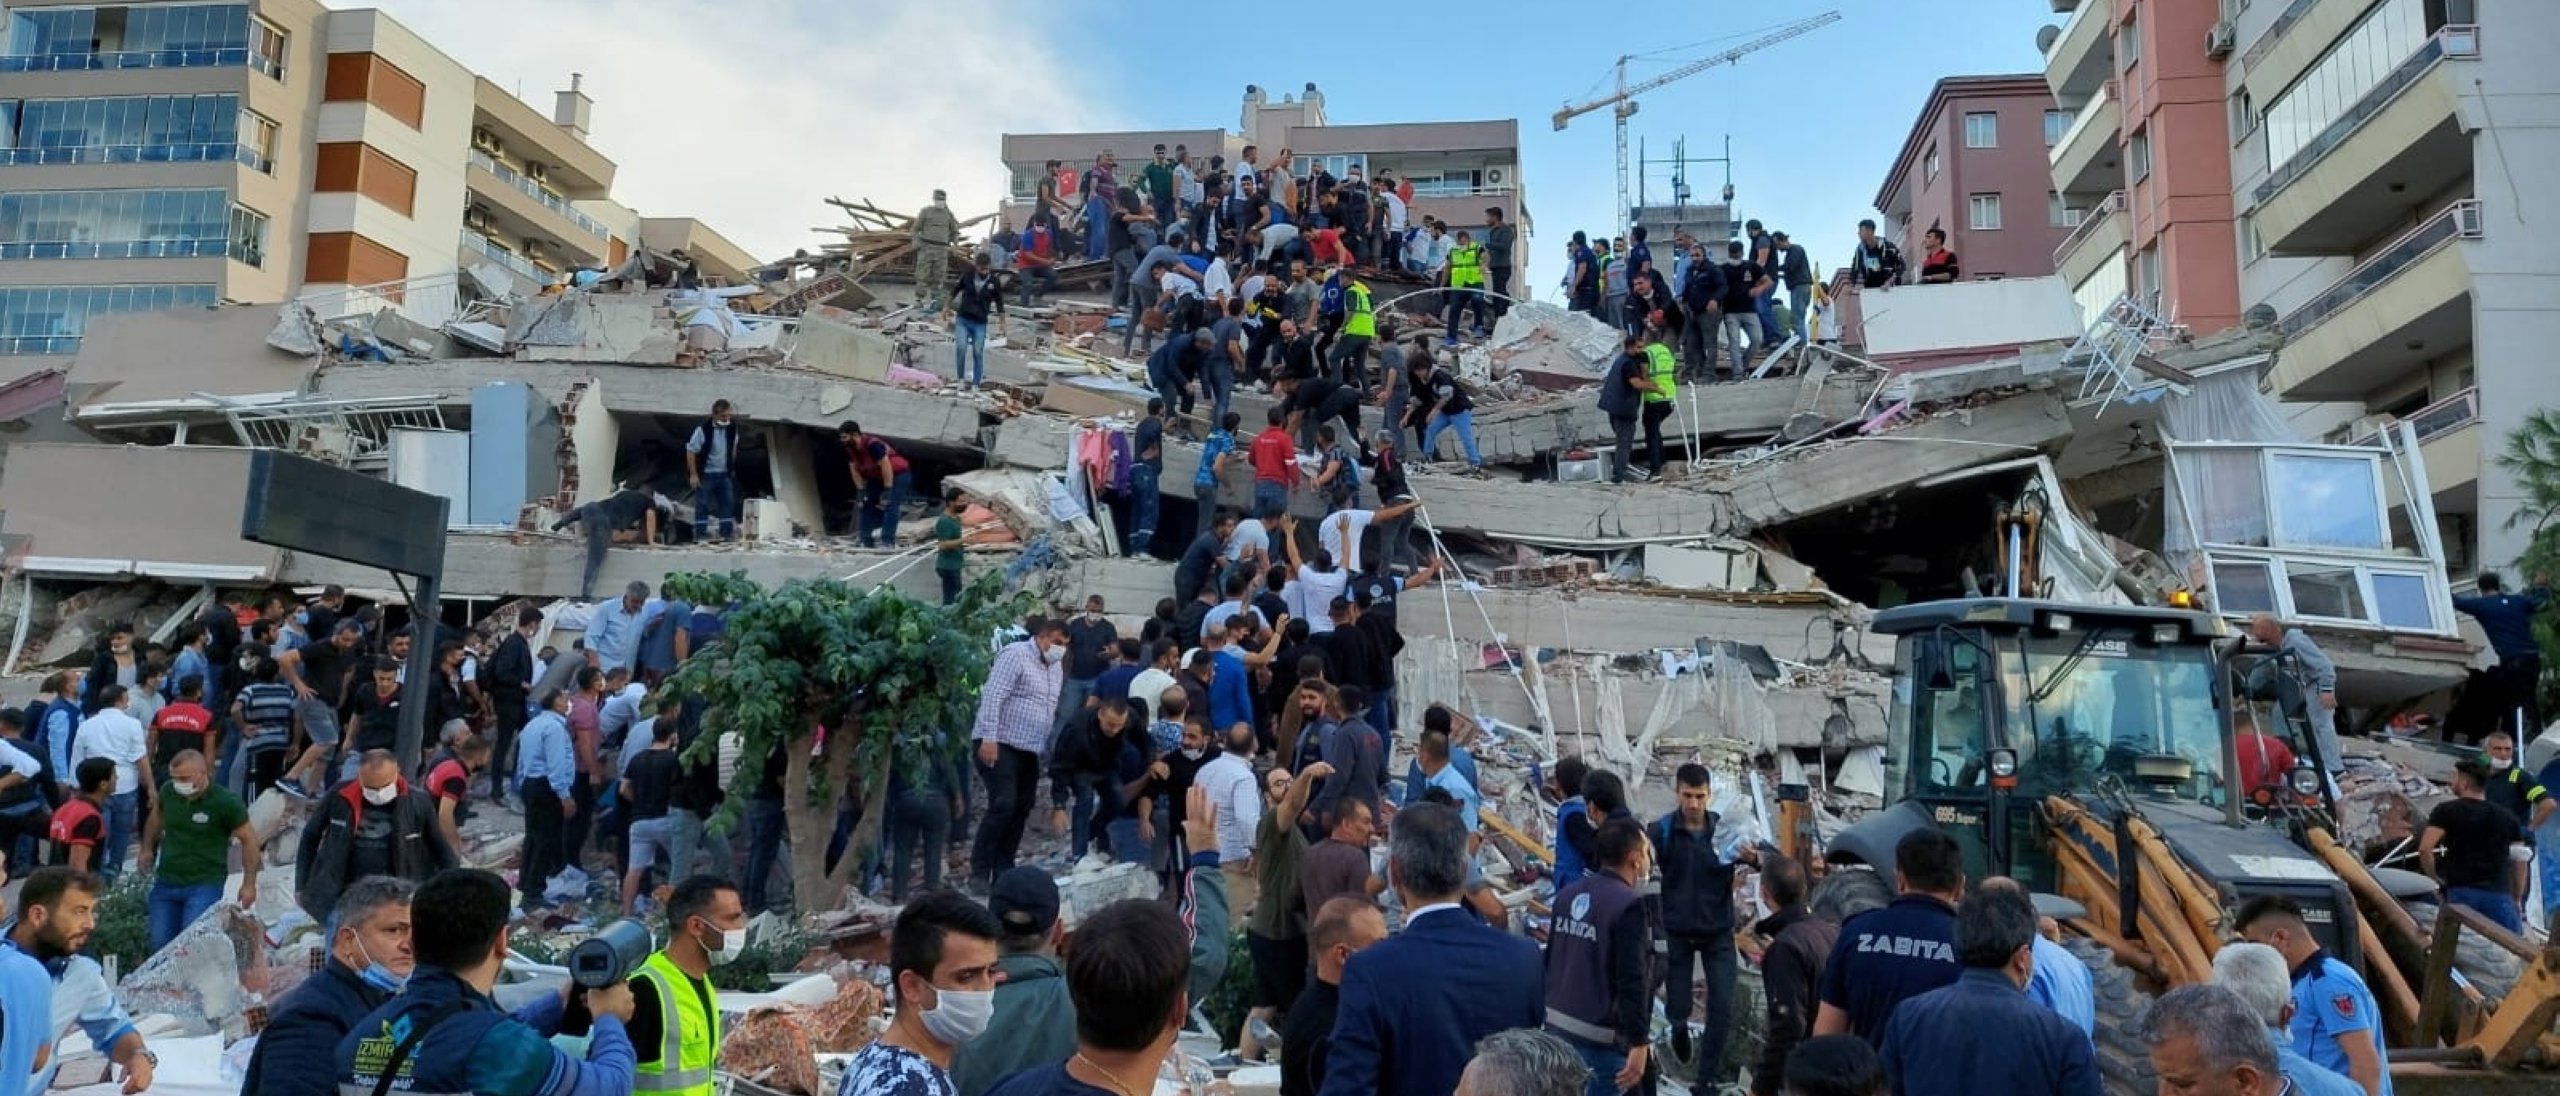 Οι ντόπιοι και οι αξιωματούχοι αναζητούν επιζώντες σε ένα κατεστραμμένο κτίριο μετά από έναν ισχυρό σεισμό που έπληξε το Αιγαίο Πέμπτη και έγινε αισθητός τόσο στην Ελλάδα όσο και στην Τουρκία, όπου μερικά κτίρια κατέρρευσαν στην παράκτια επαρχία της Σμύρνης, της Τουρκίας, στις 30 Οκτωβρίου 2020. (Reuters Photo )